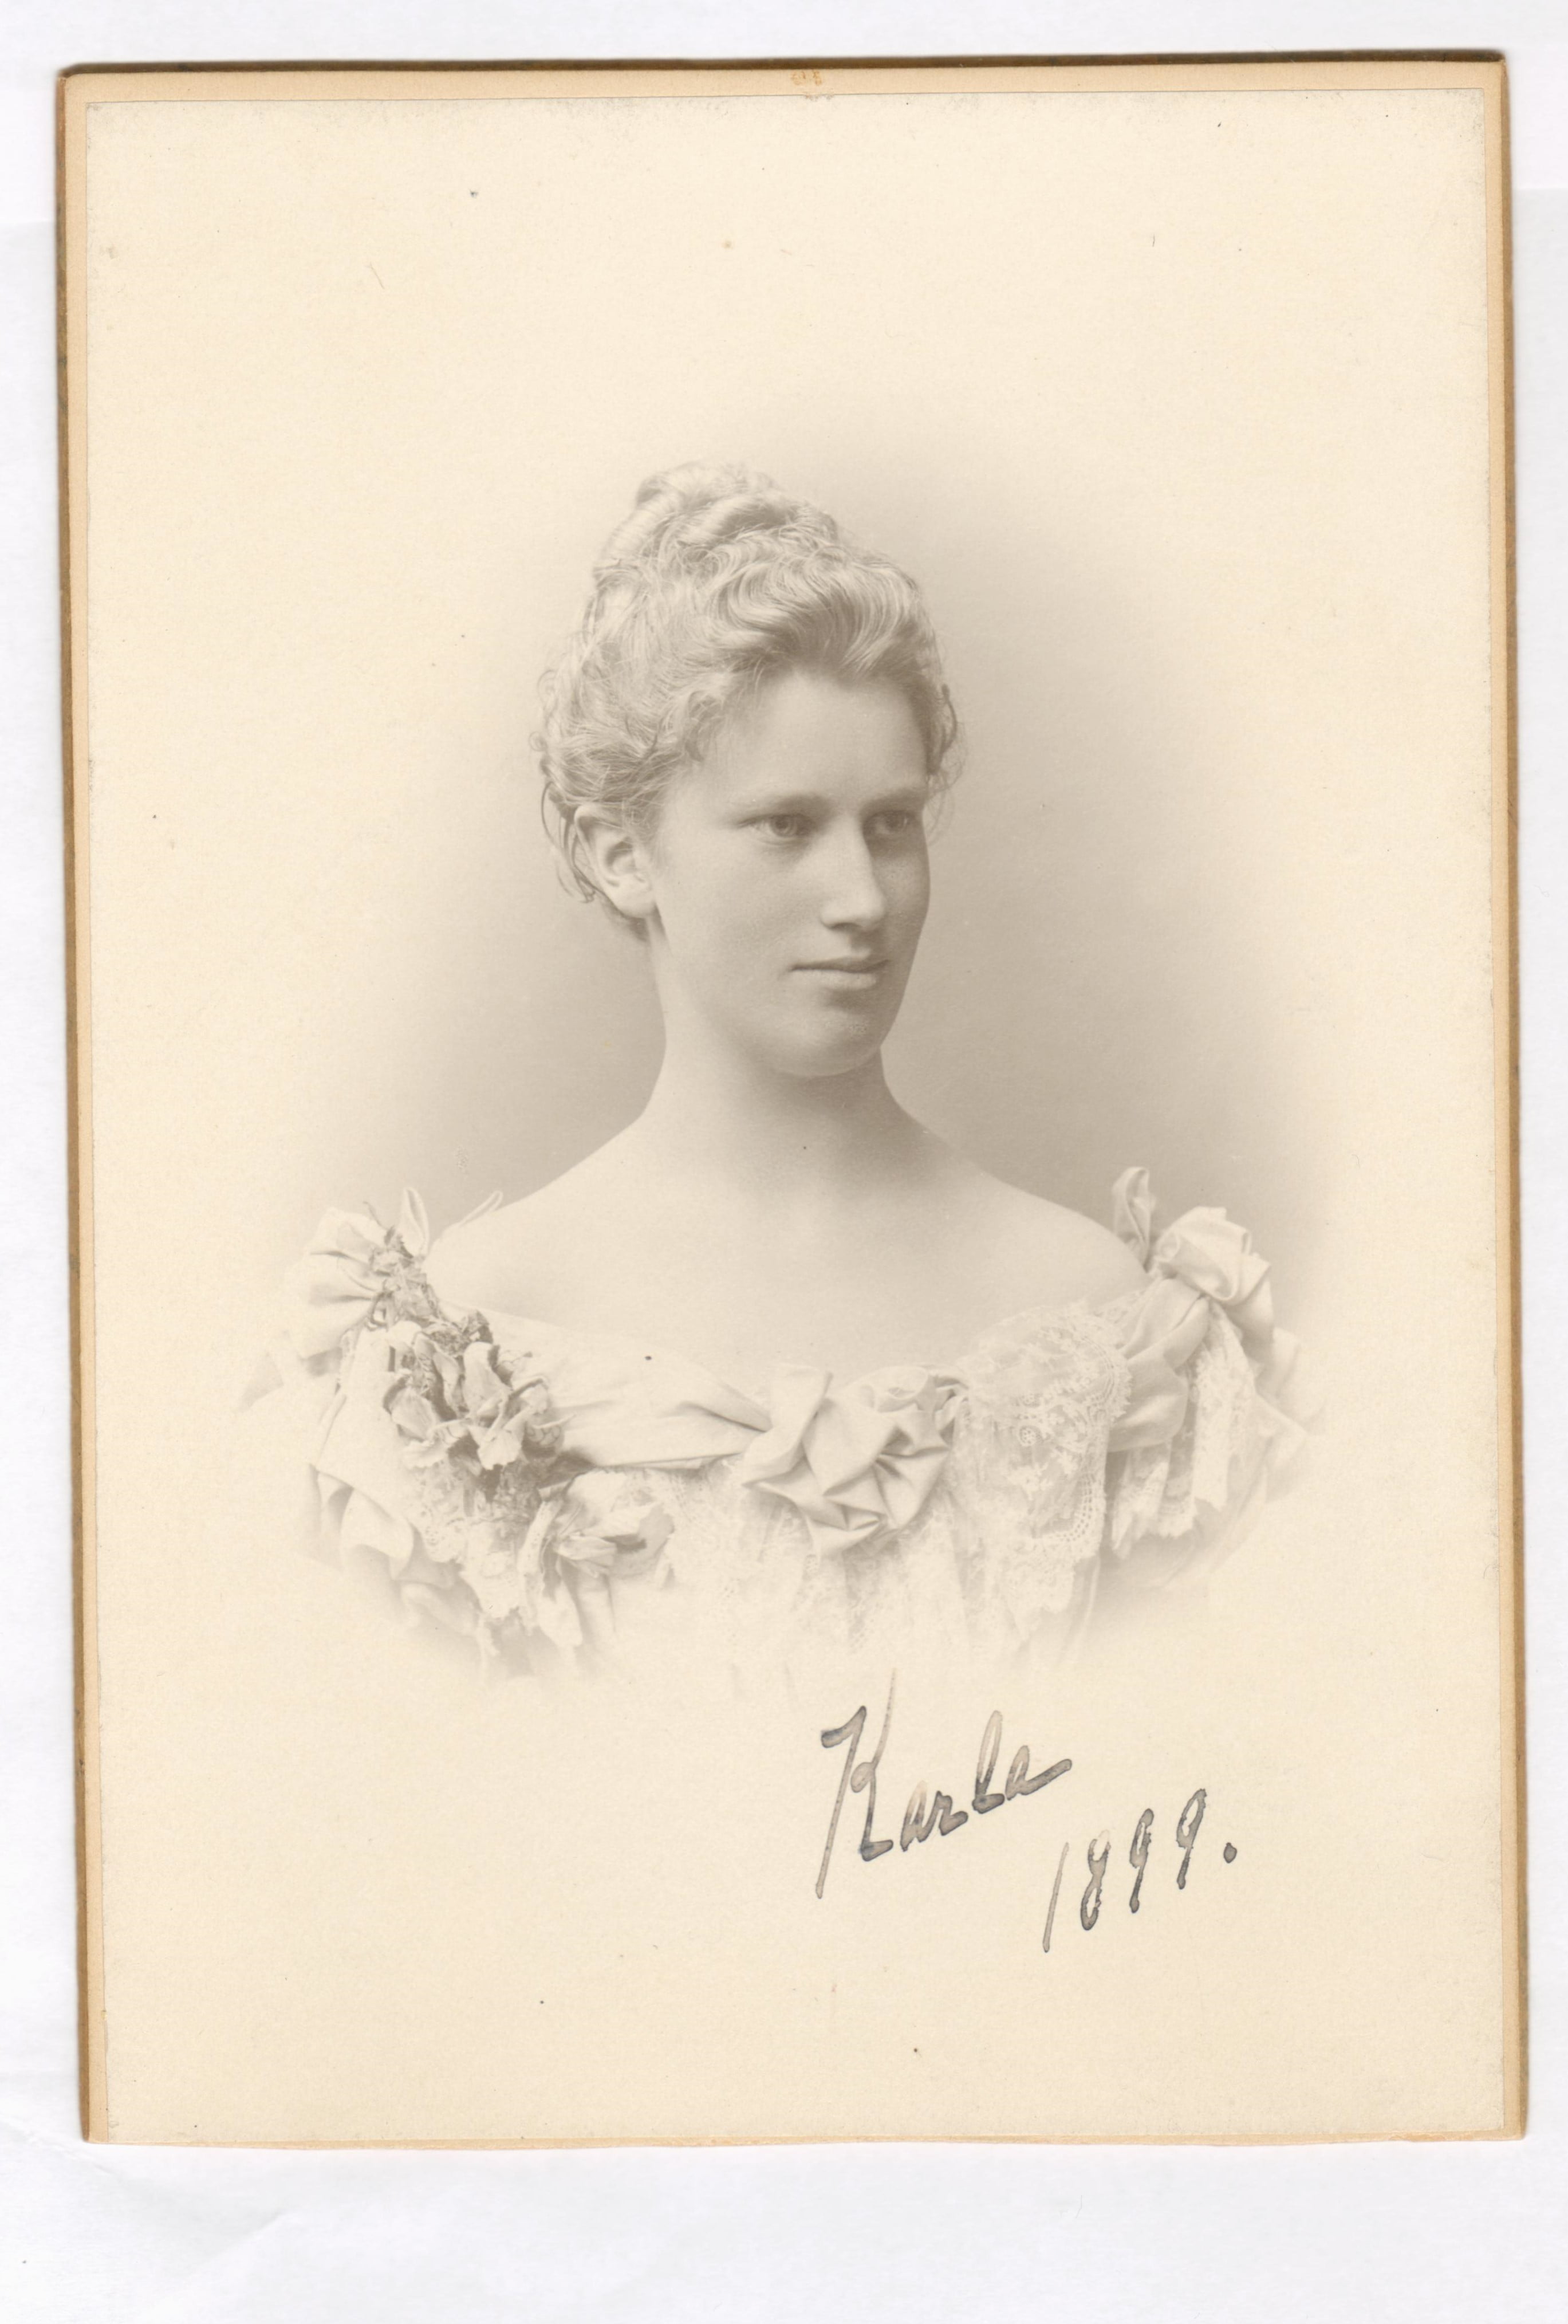 75.75  Carla Borch, f. 12.2. 1877 søster til Olaf Georg.  Fotograf Carl Sonne, Gothersgade 45, København  Dateret januar 1899